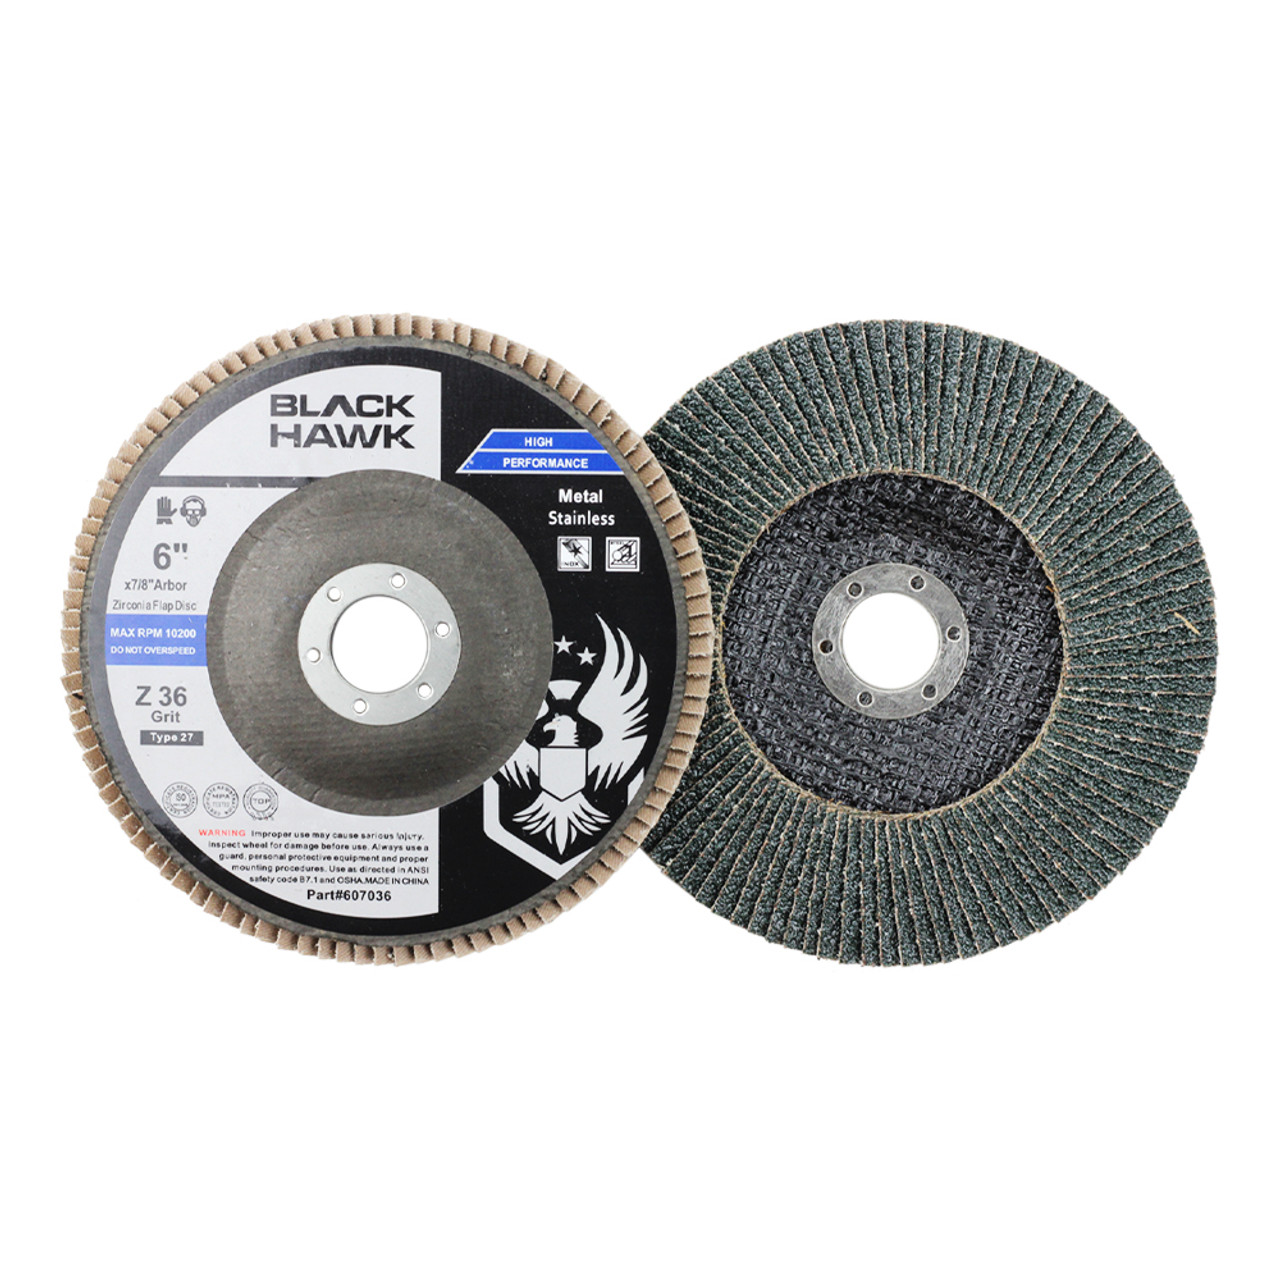 6 in., 80 Grit PSA Sanding Discs with Zirconia Alumina Grain, 50-Pack